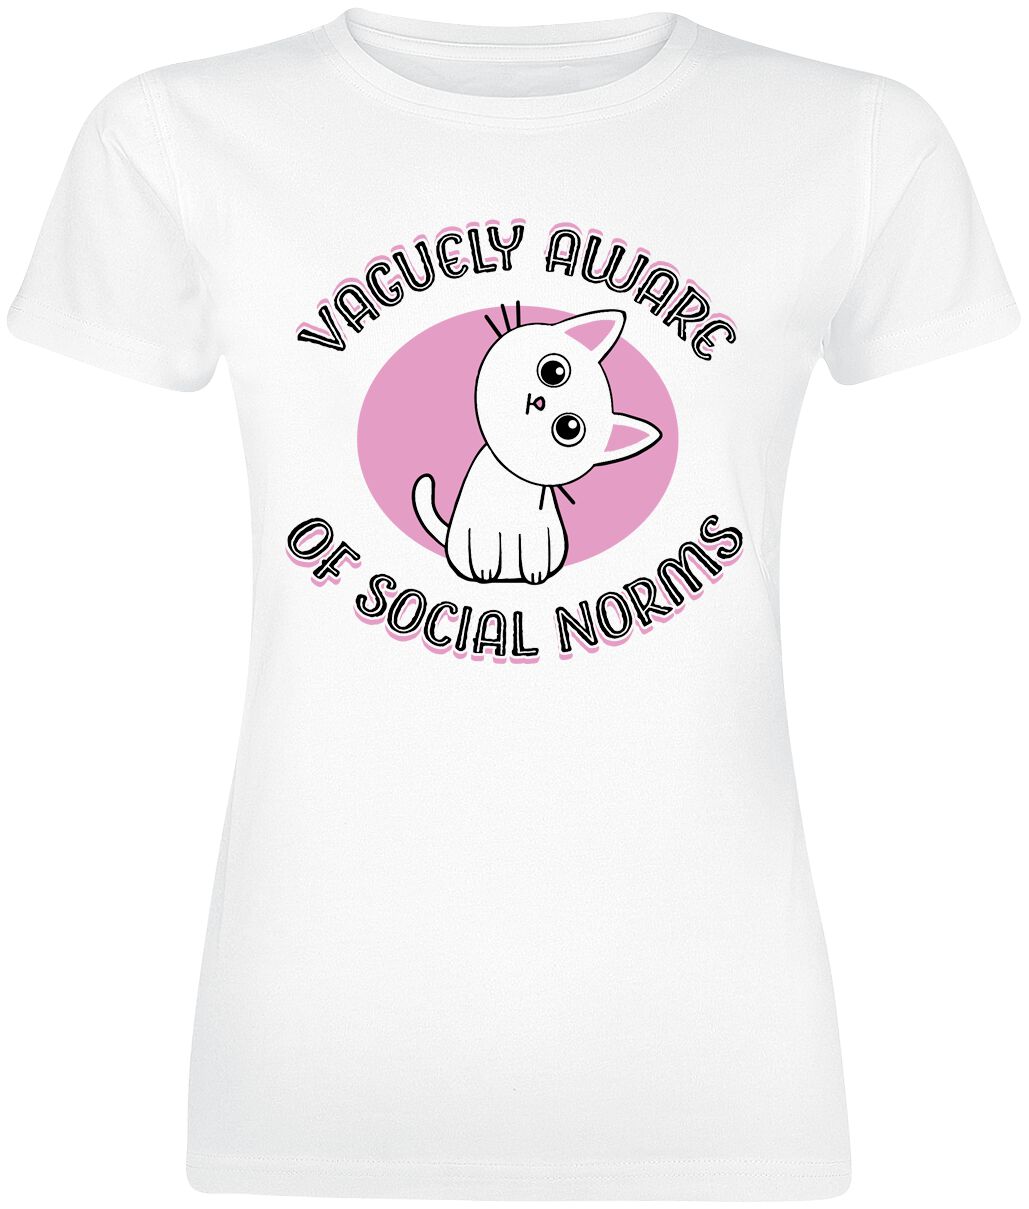 Vaguely Aware Of Social Norms T-Shirt weiß von Tierisch